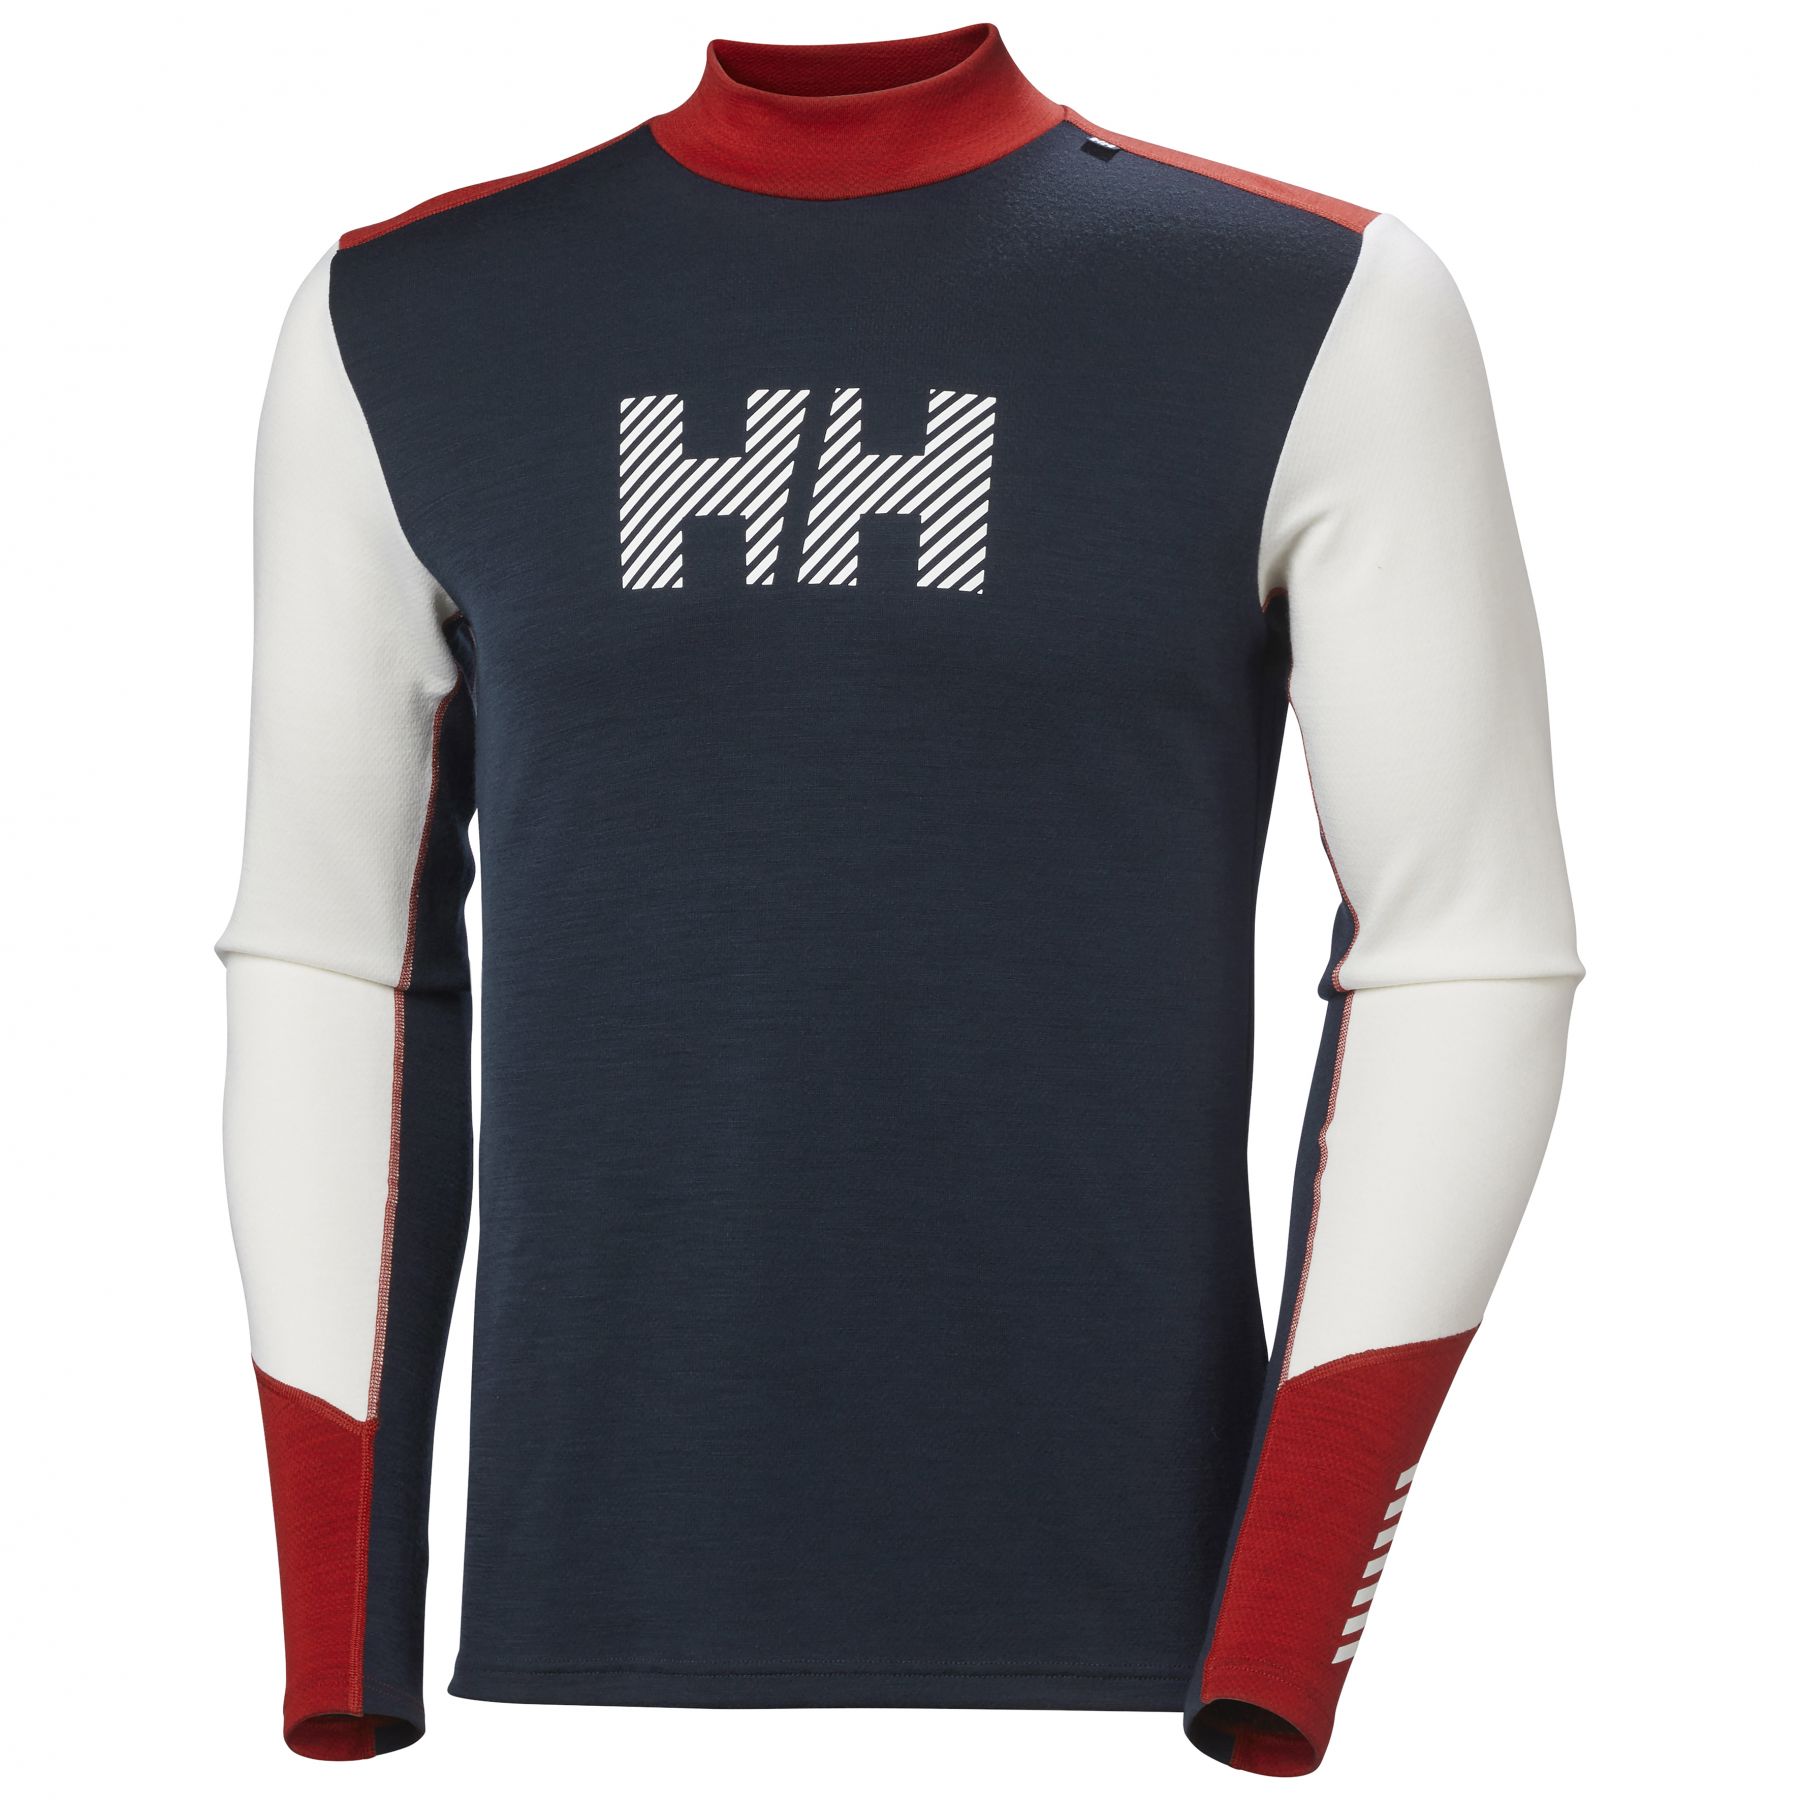 Brug Helly Hansen Lifa Merino Midweight Logo, herre, mørkeblå/hvid/rød til en forbedret oplevelse